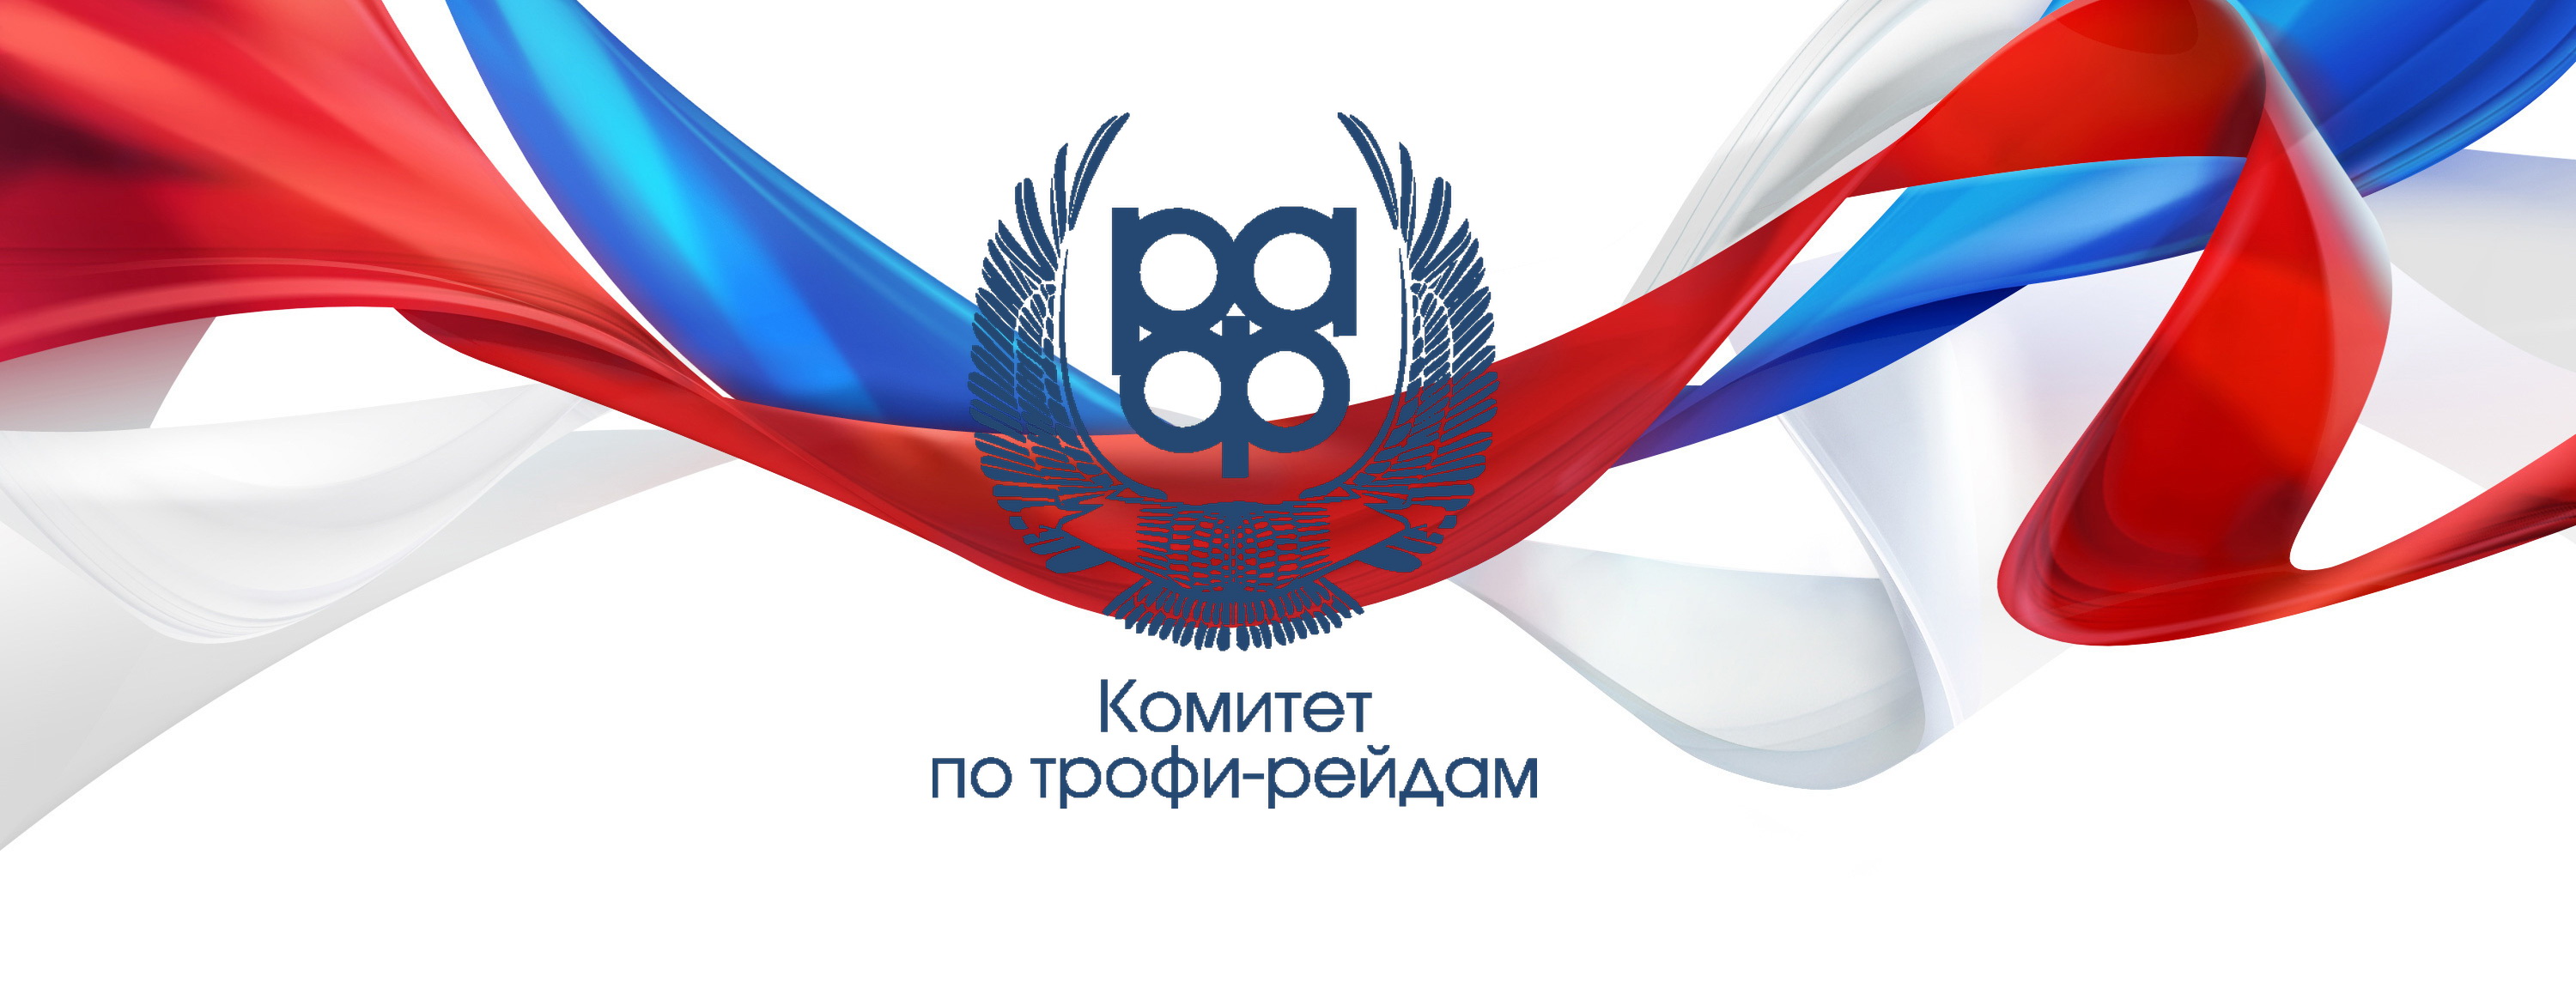 Открыта регистрация участников первого этапа Чемпионата России